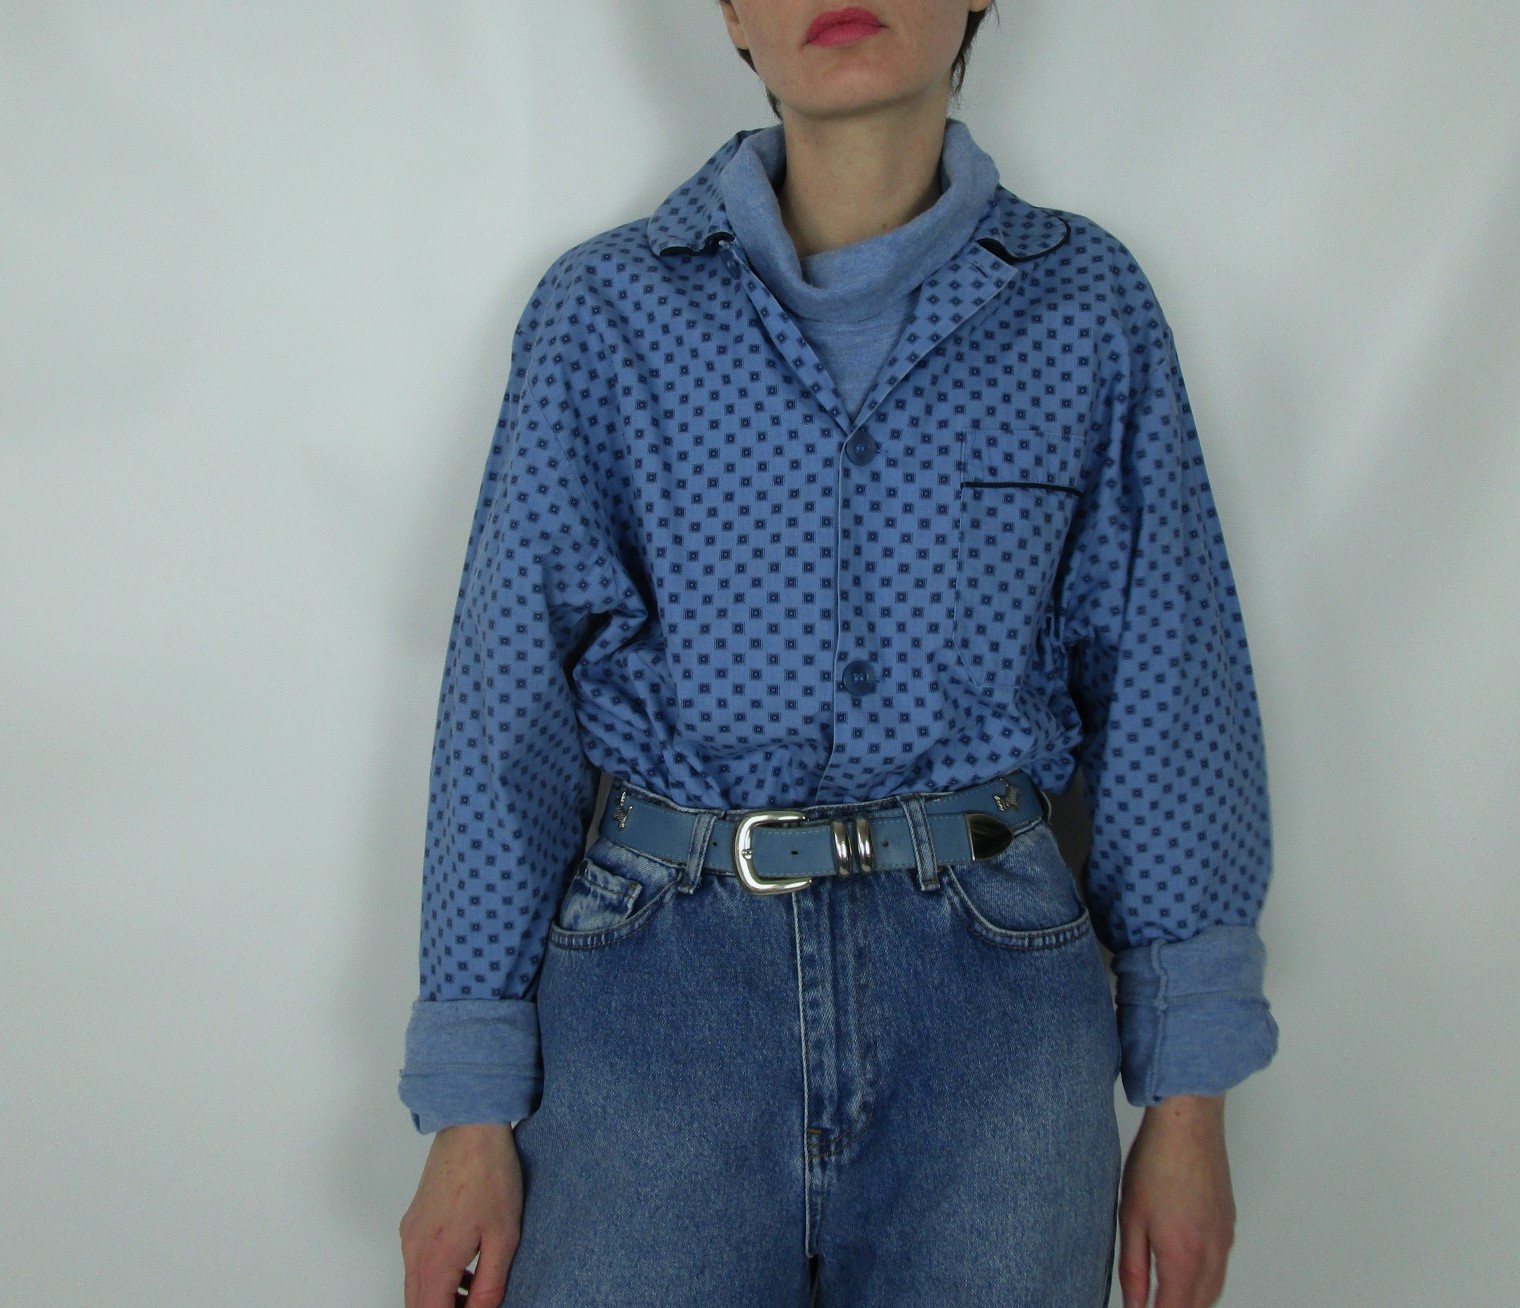 Chemise pyjama bleu motifs carrés XL/XXL